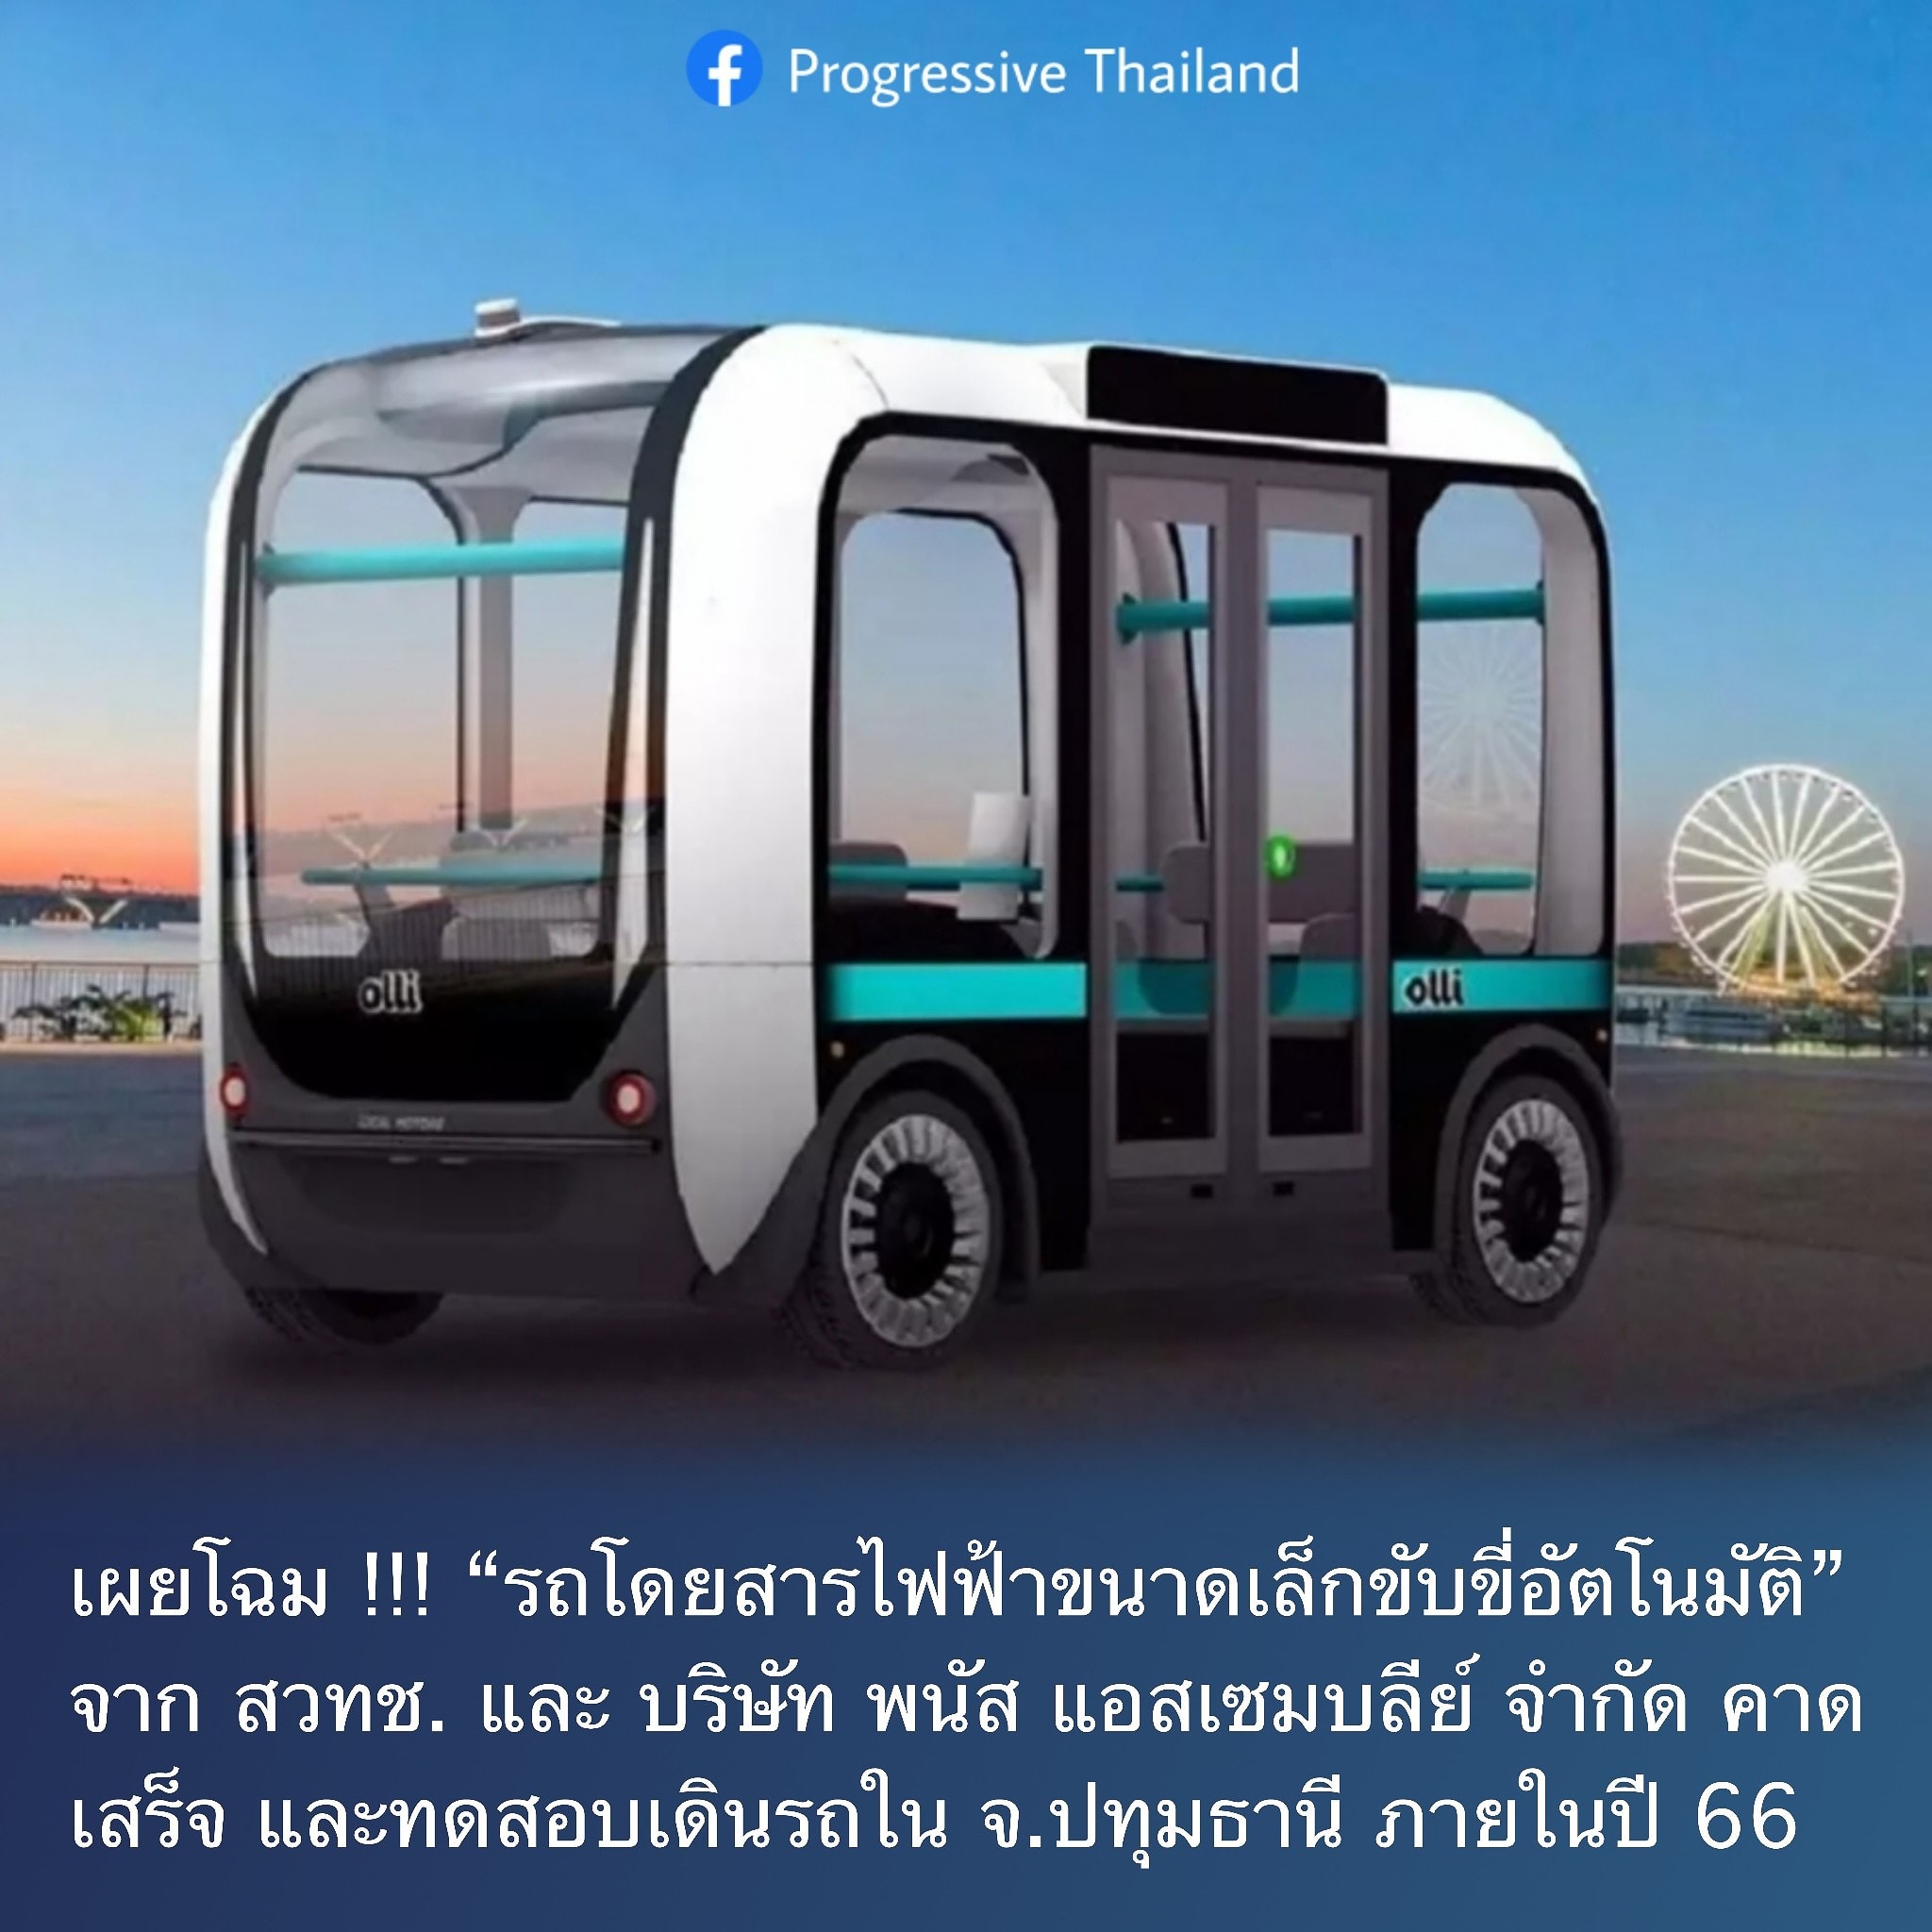 เผยโฉม !!! “รถโดยสารไฟฟ้าขนาดเล็กขับขี่อัตโนมัติ” ฝีมือคนไทย พร้อมทดสอบปี 66